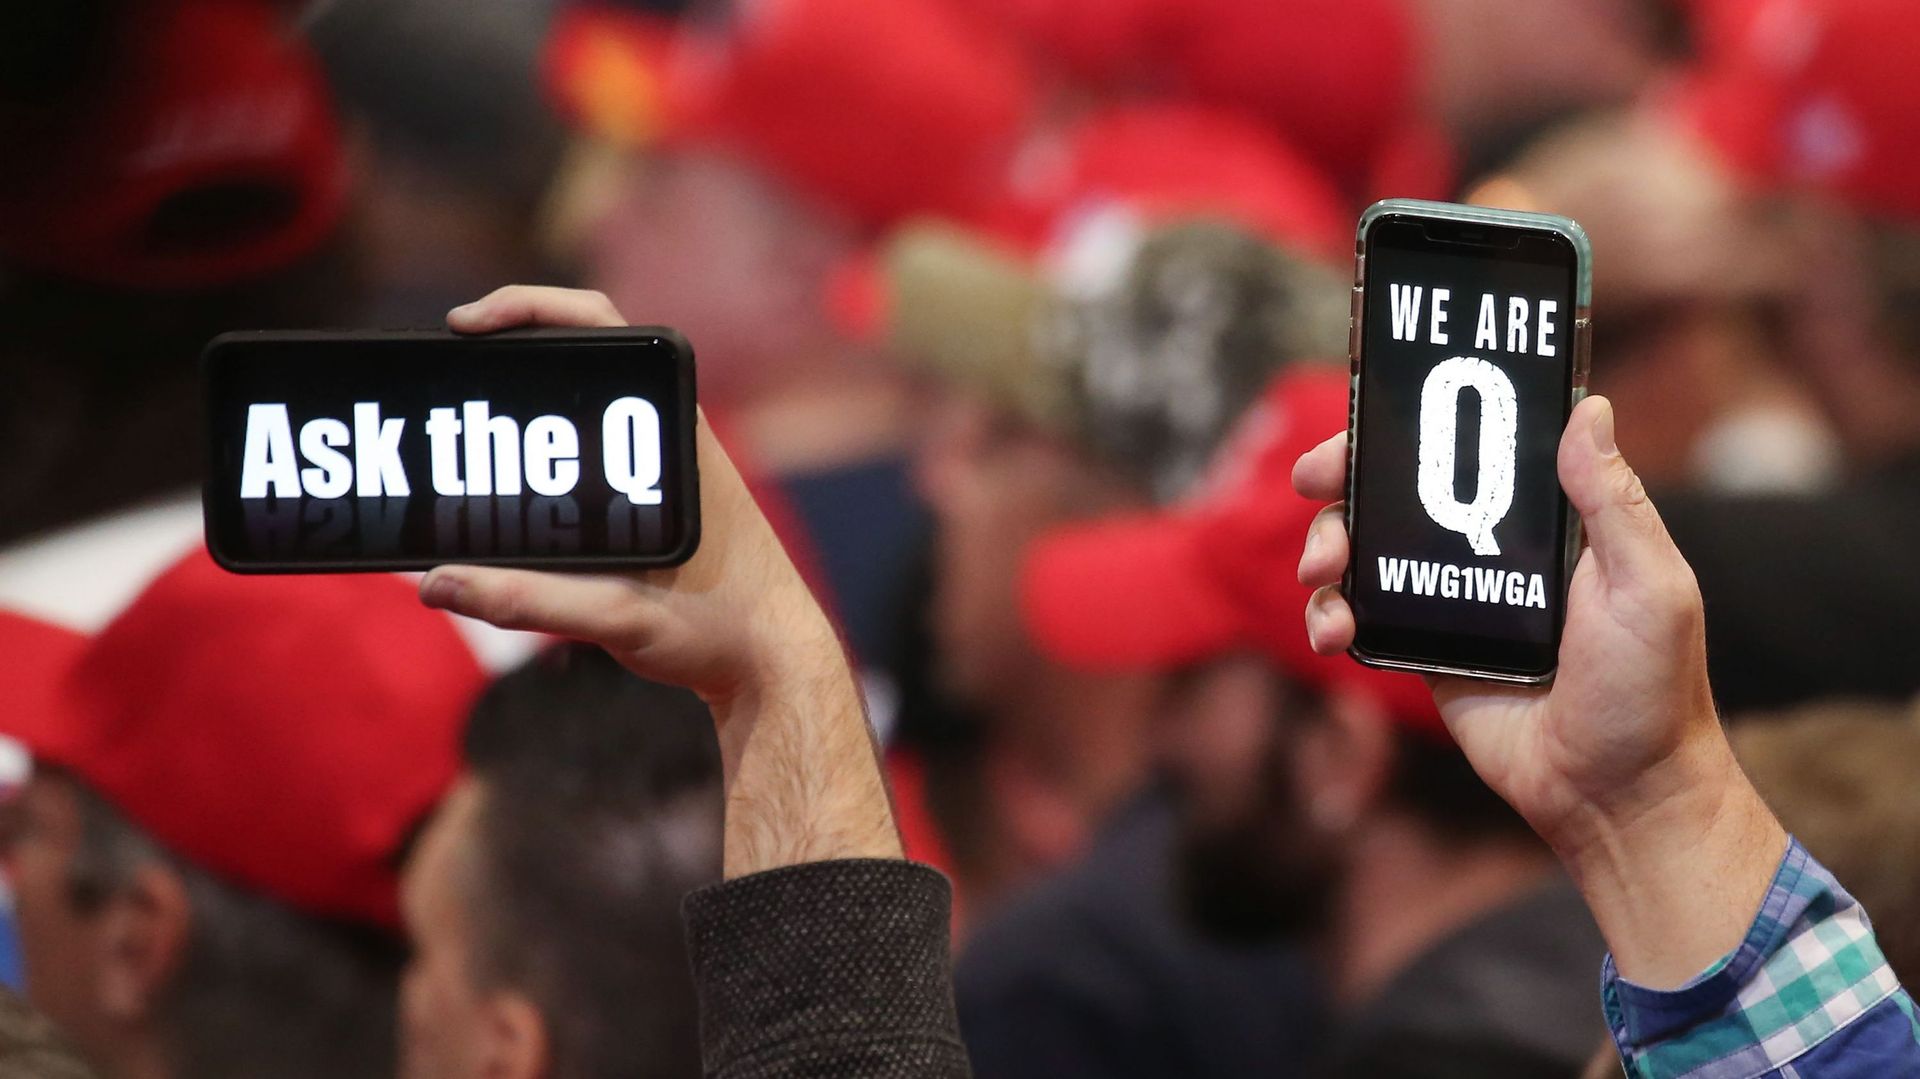 Des partisans du président Donald Trump brandissent leur téléphone avec des messages faisant référence à la théorie conspirationniste QAnon lors d’un meeting de campagne au Las Vegas Convention Center le 21 février 2020.